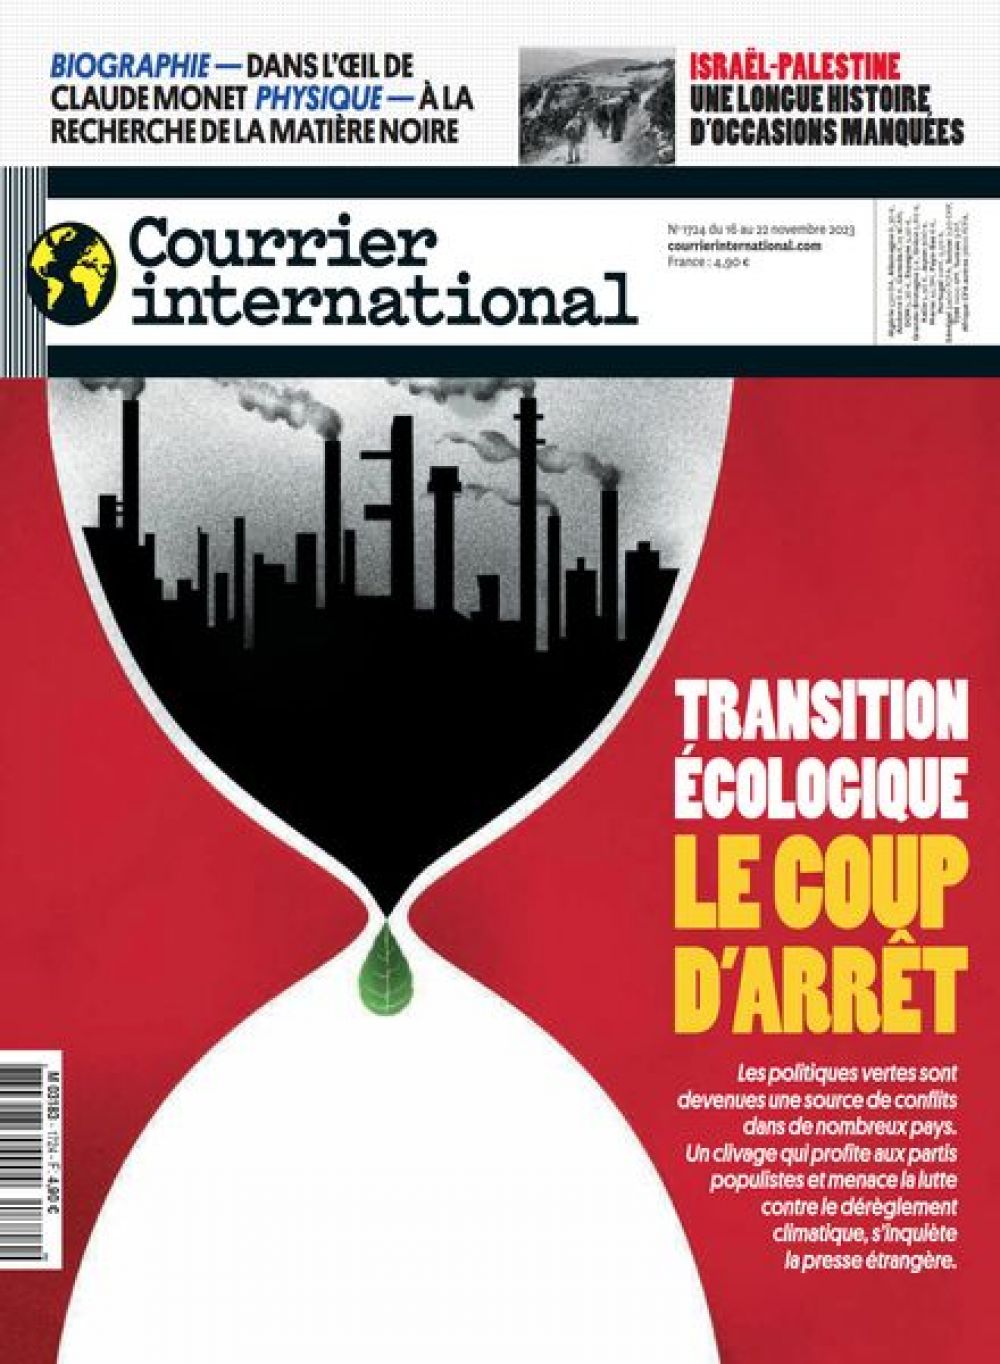 Французский Courrier international обращает внимание, что международными организациями уже было предложено немало методов, позволяющих сделать производство более экологичным. Однако многие заводы и предприятия по-прежнему не реагируют на «зеленые» советы. 